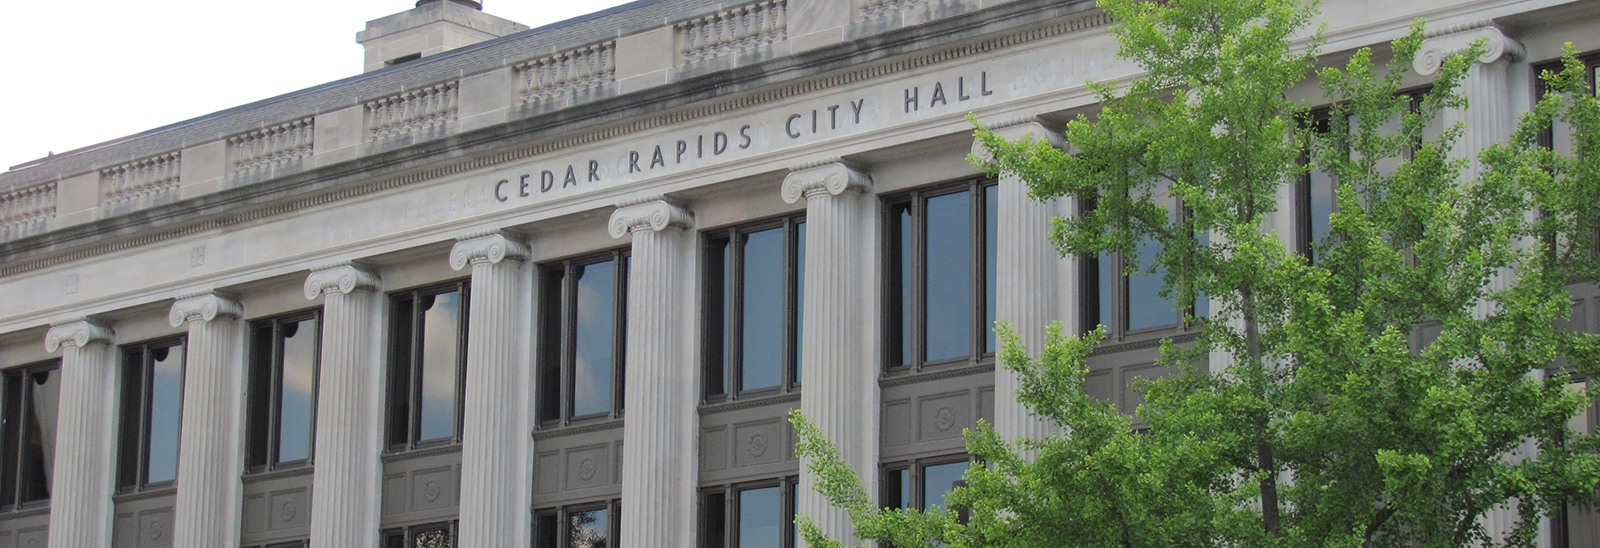 Cedar Rapids City Hall Building